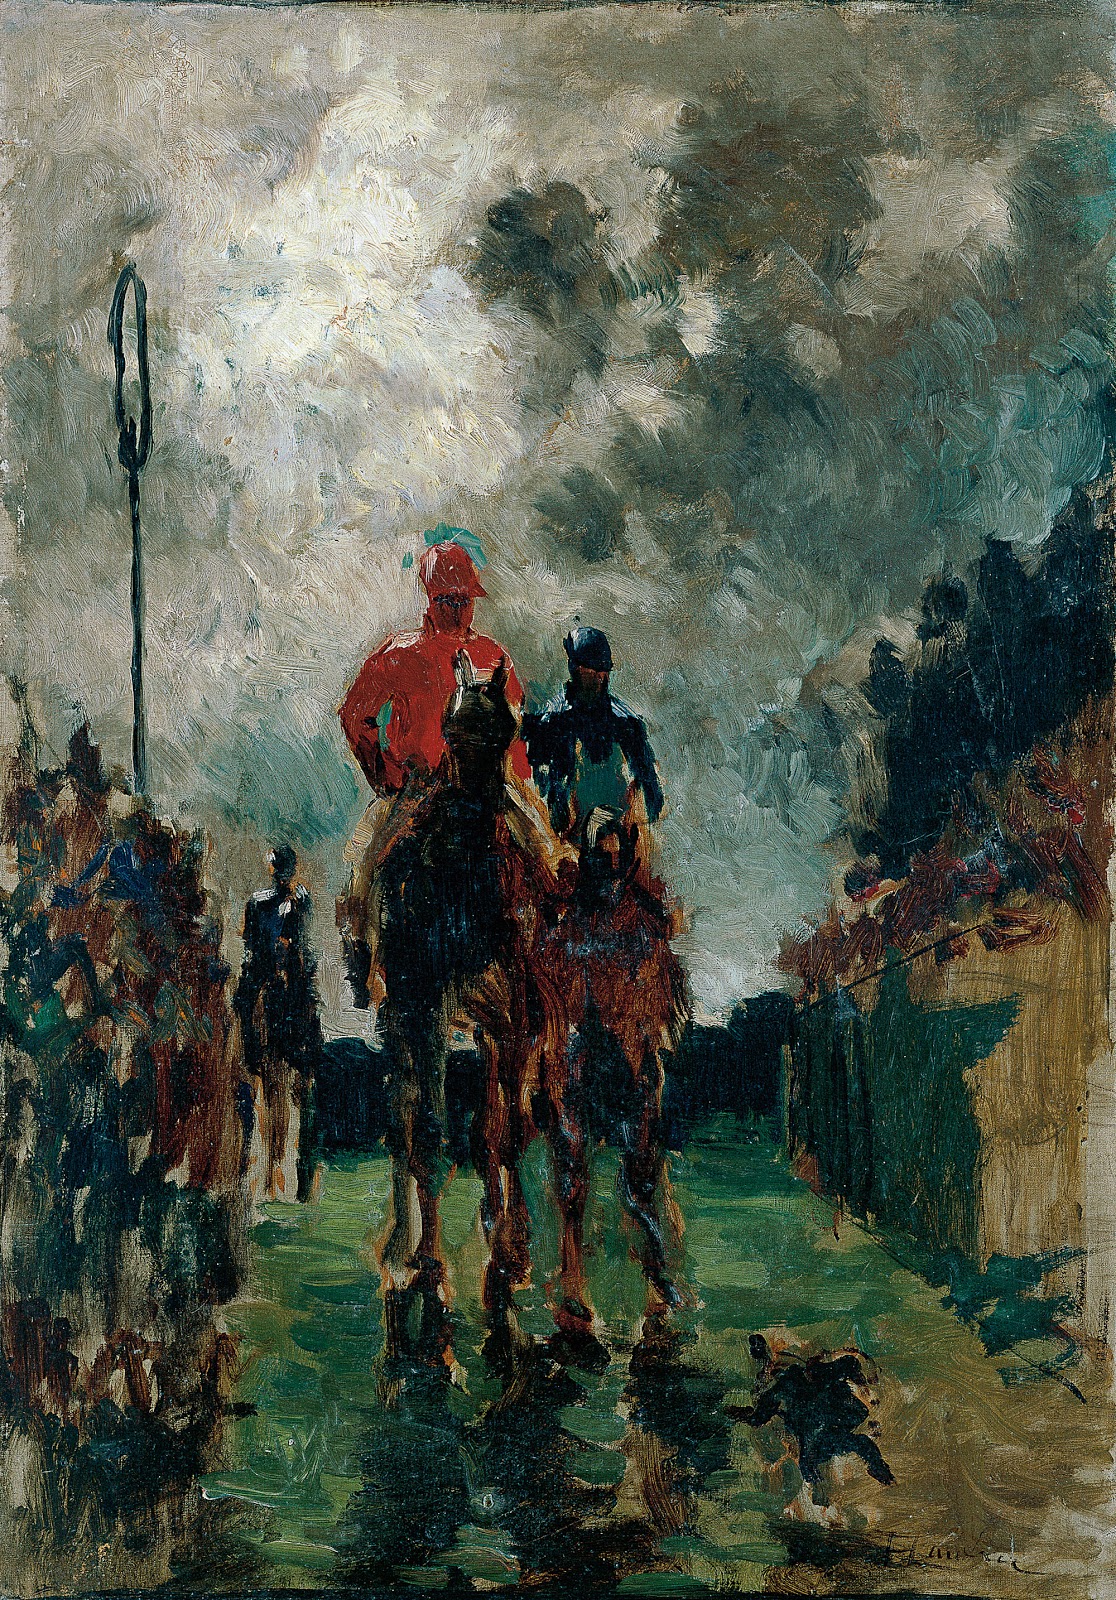 Henri+de+Toulouse+Lautrec-1864-1901 (114).jpg